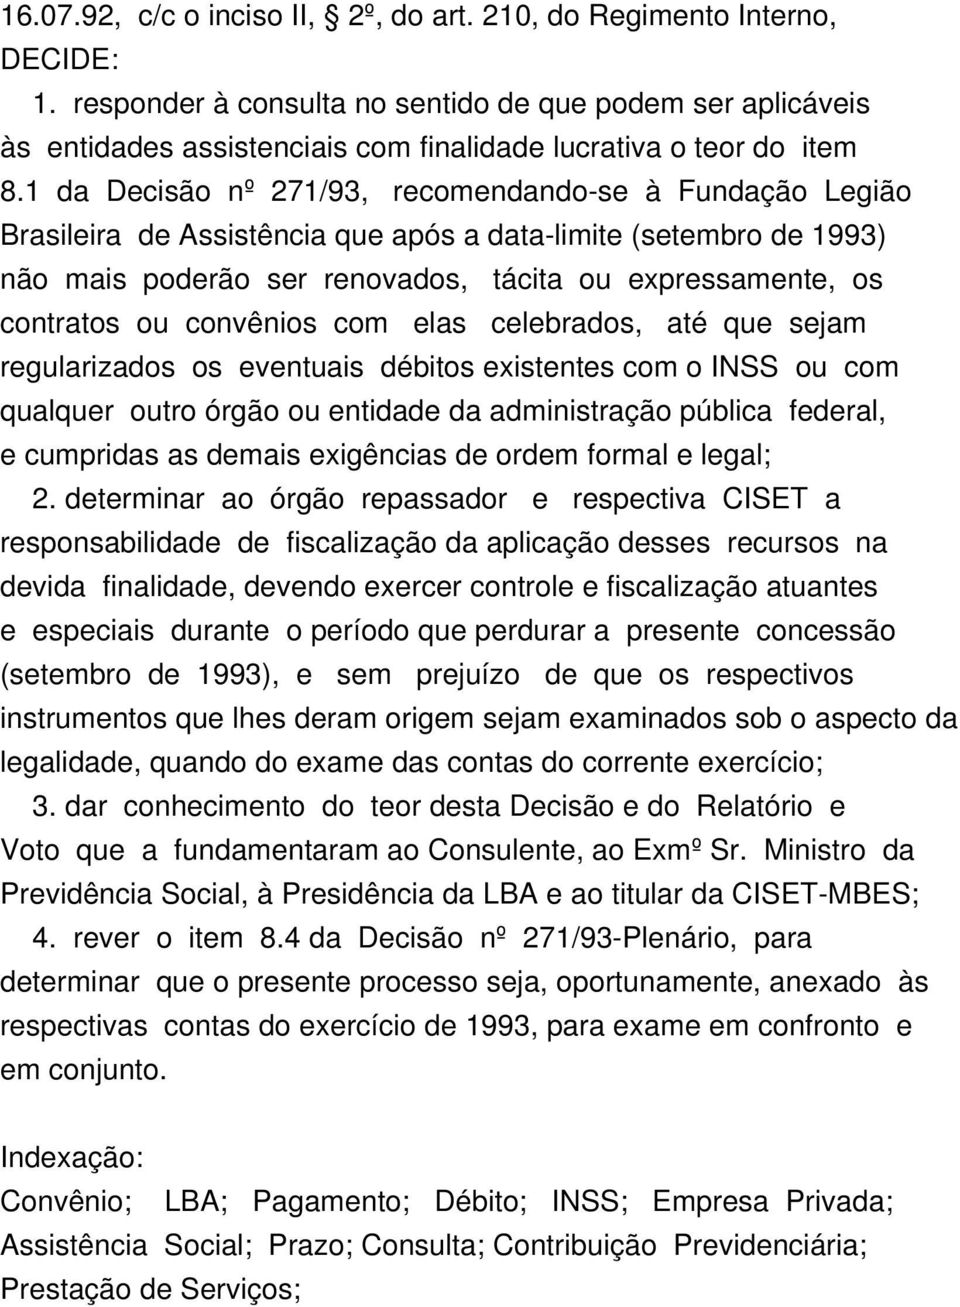 1 da Decisão nº 271/93, recomendando-se à Fundação Legião Brasileira de Assistência que após a data-limite (setembro de 1993) não mais poderão ser renovados, tácita ou expressamente, os contratos ou